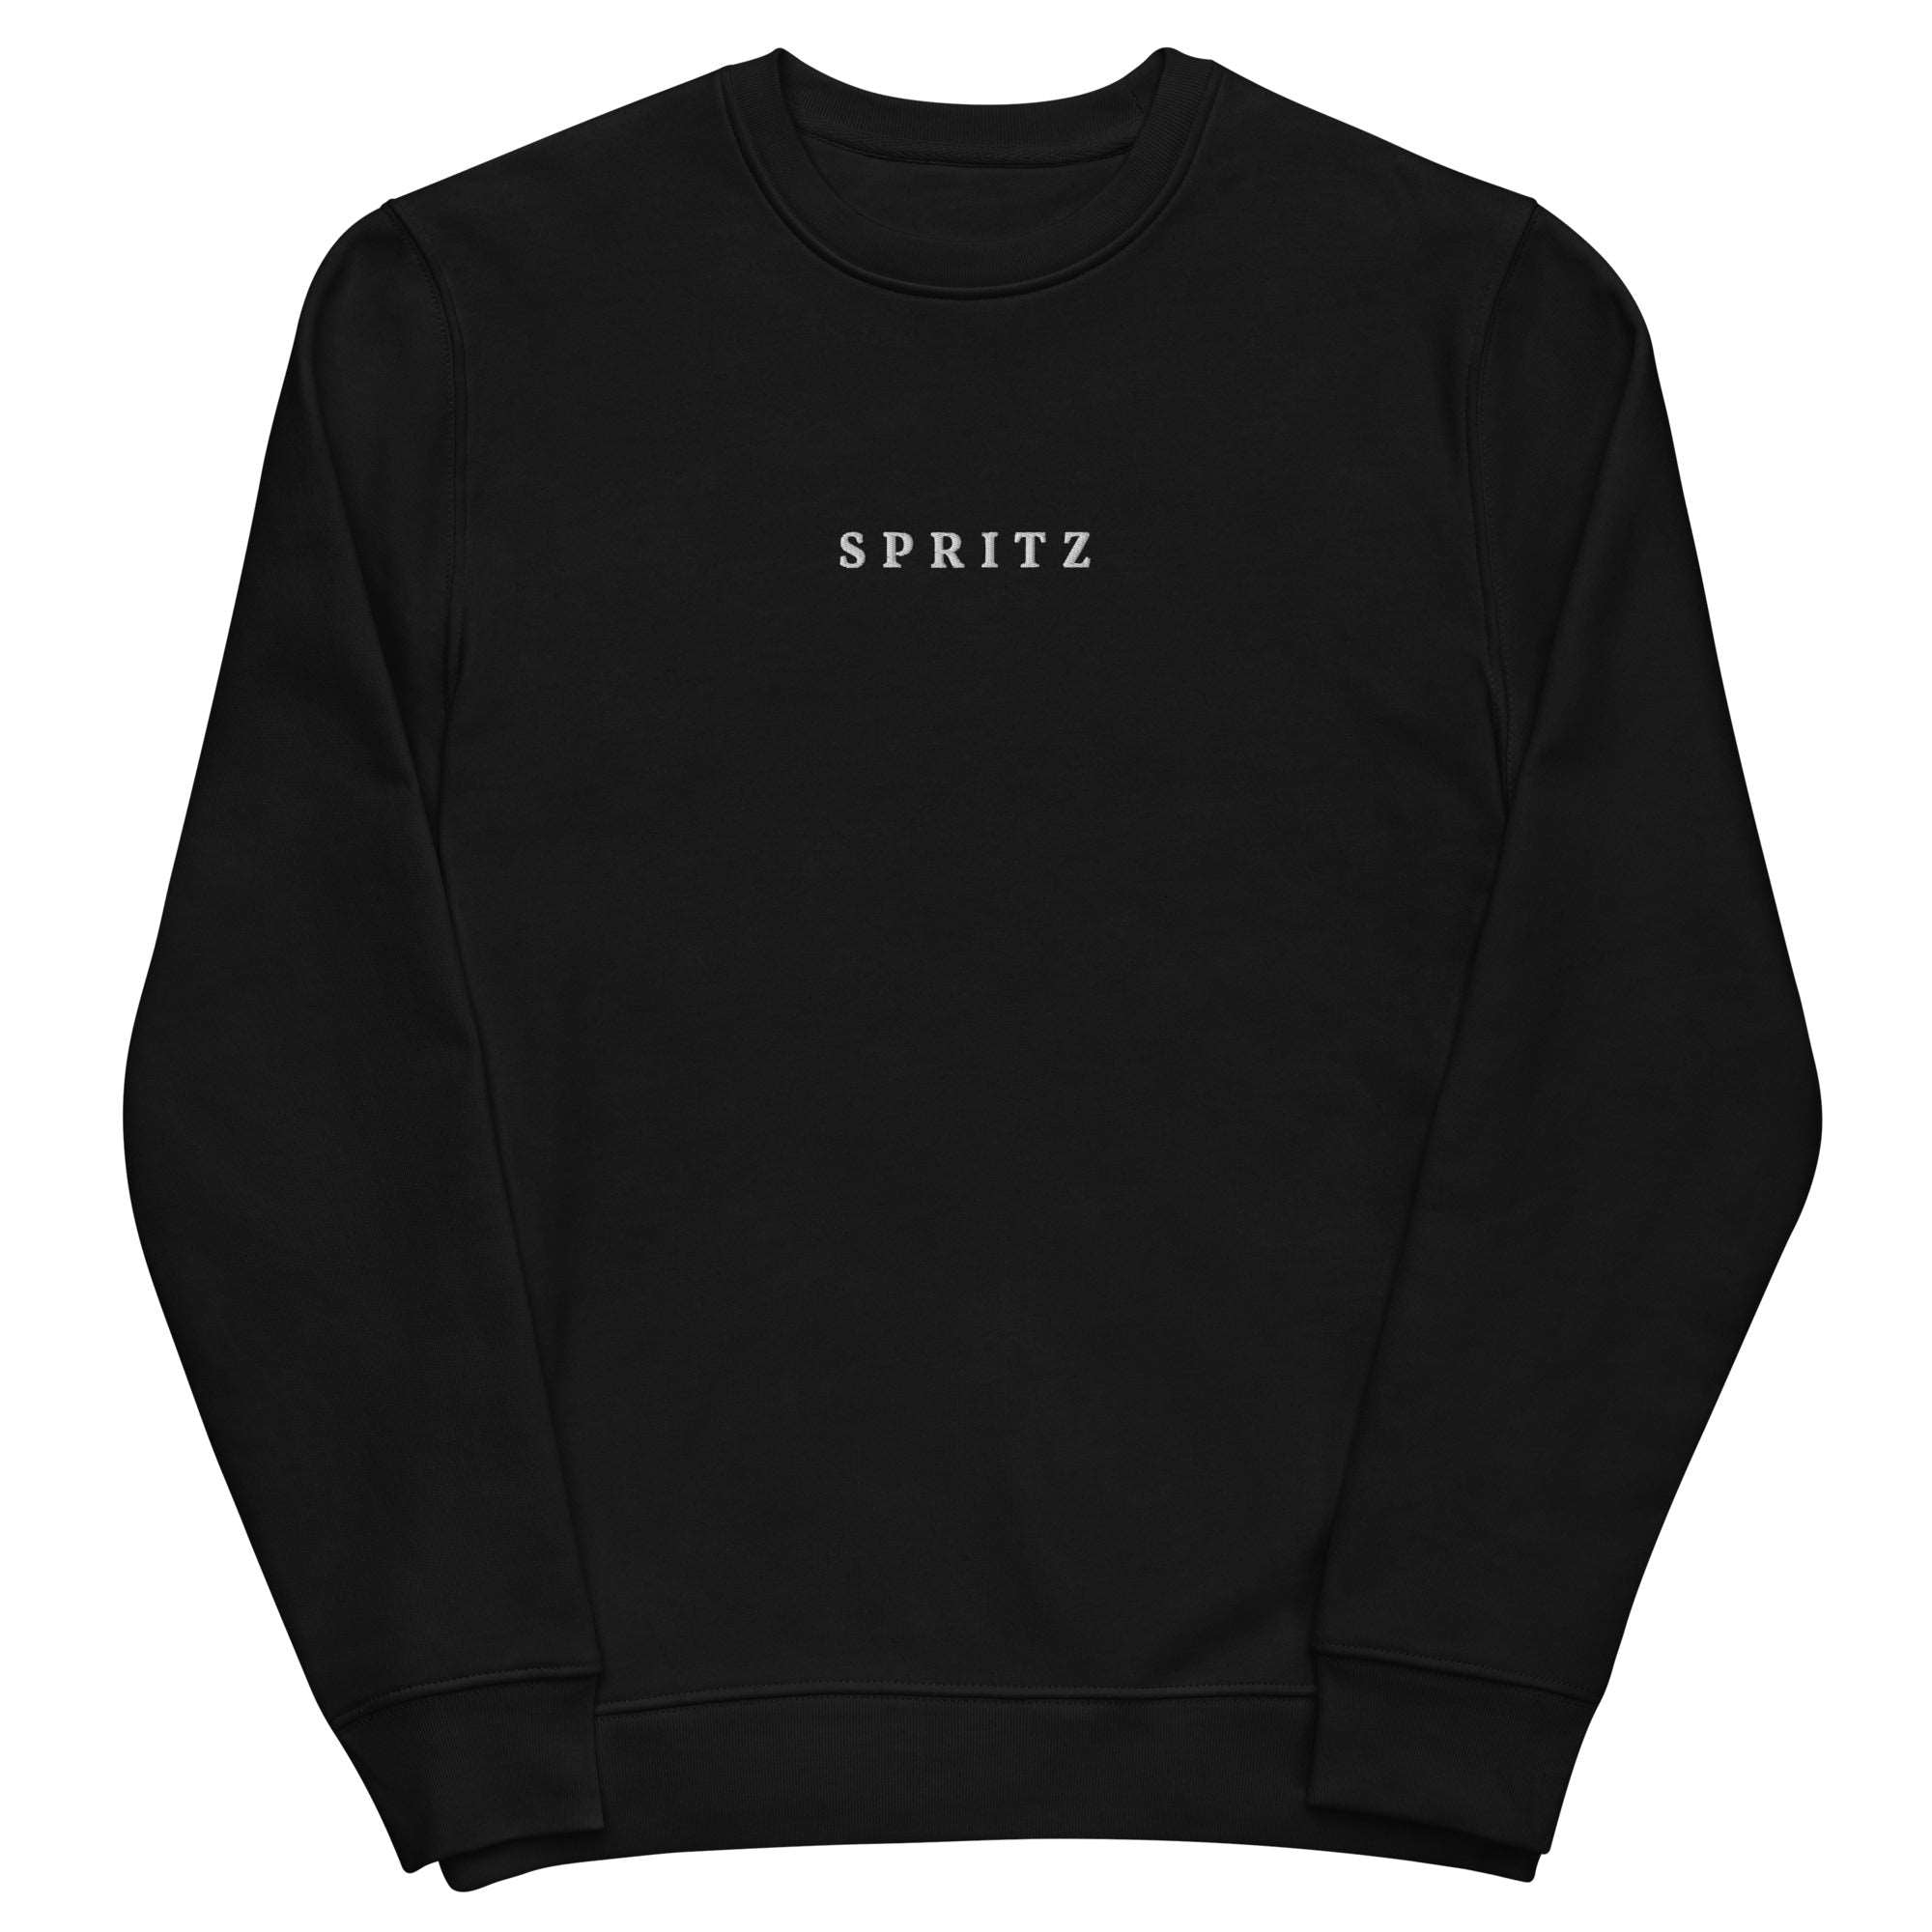 Spritz - Organic Embroidered Sweatshirt - The Refined Spirit